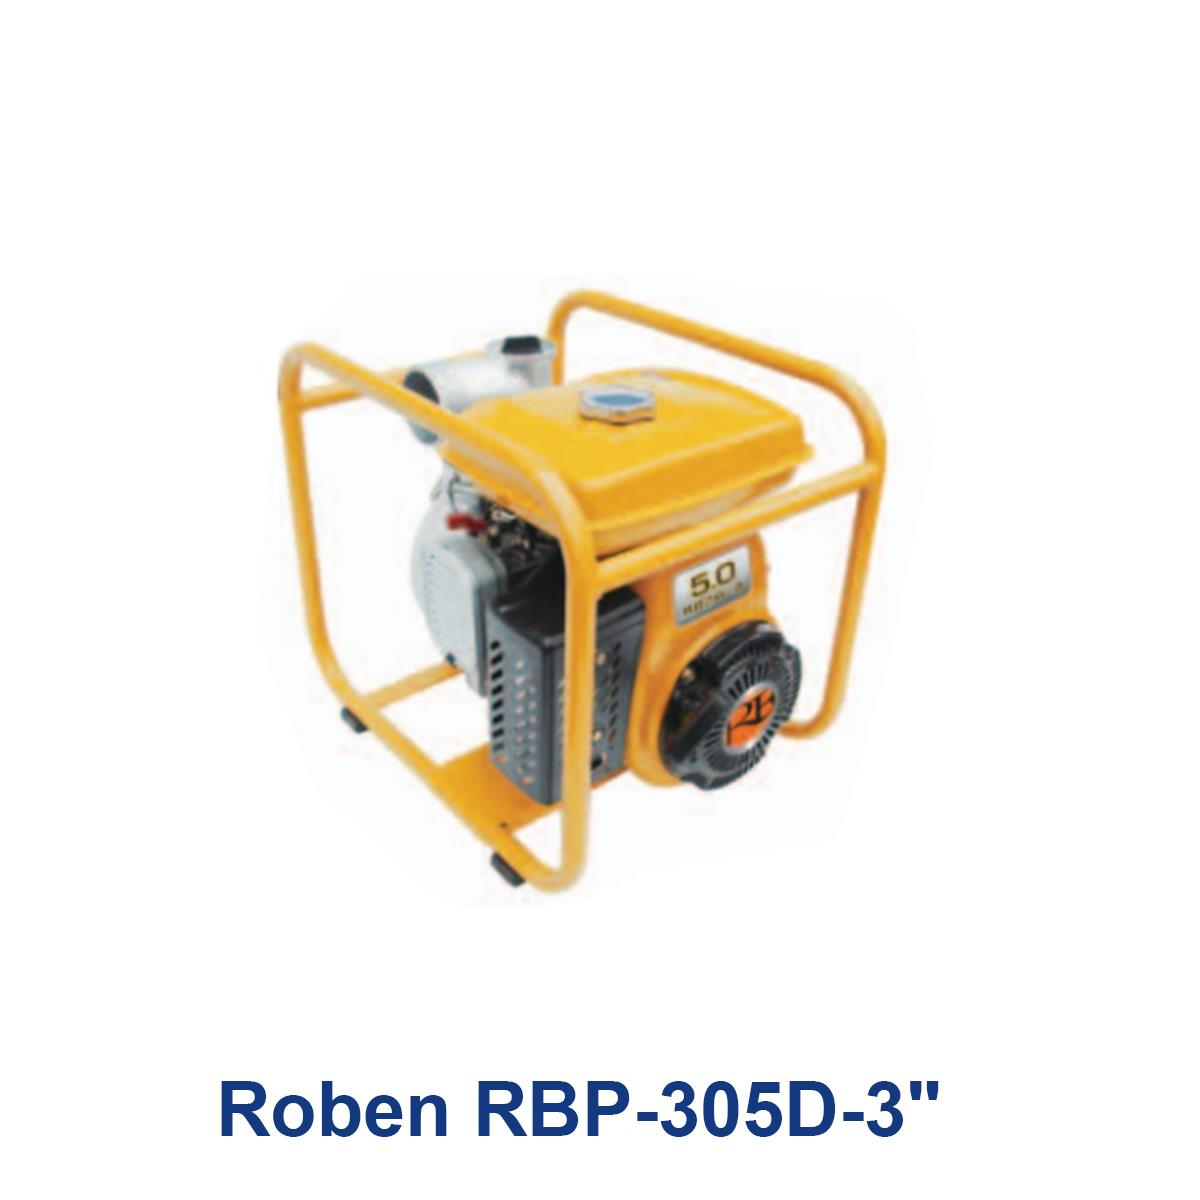 Roben-RBP-305D-3